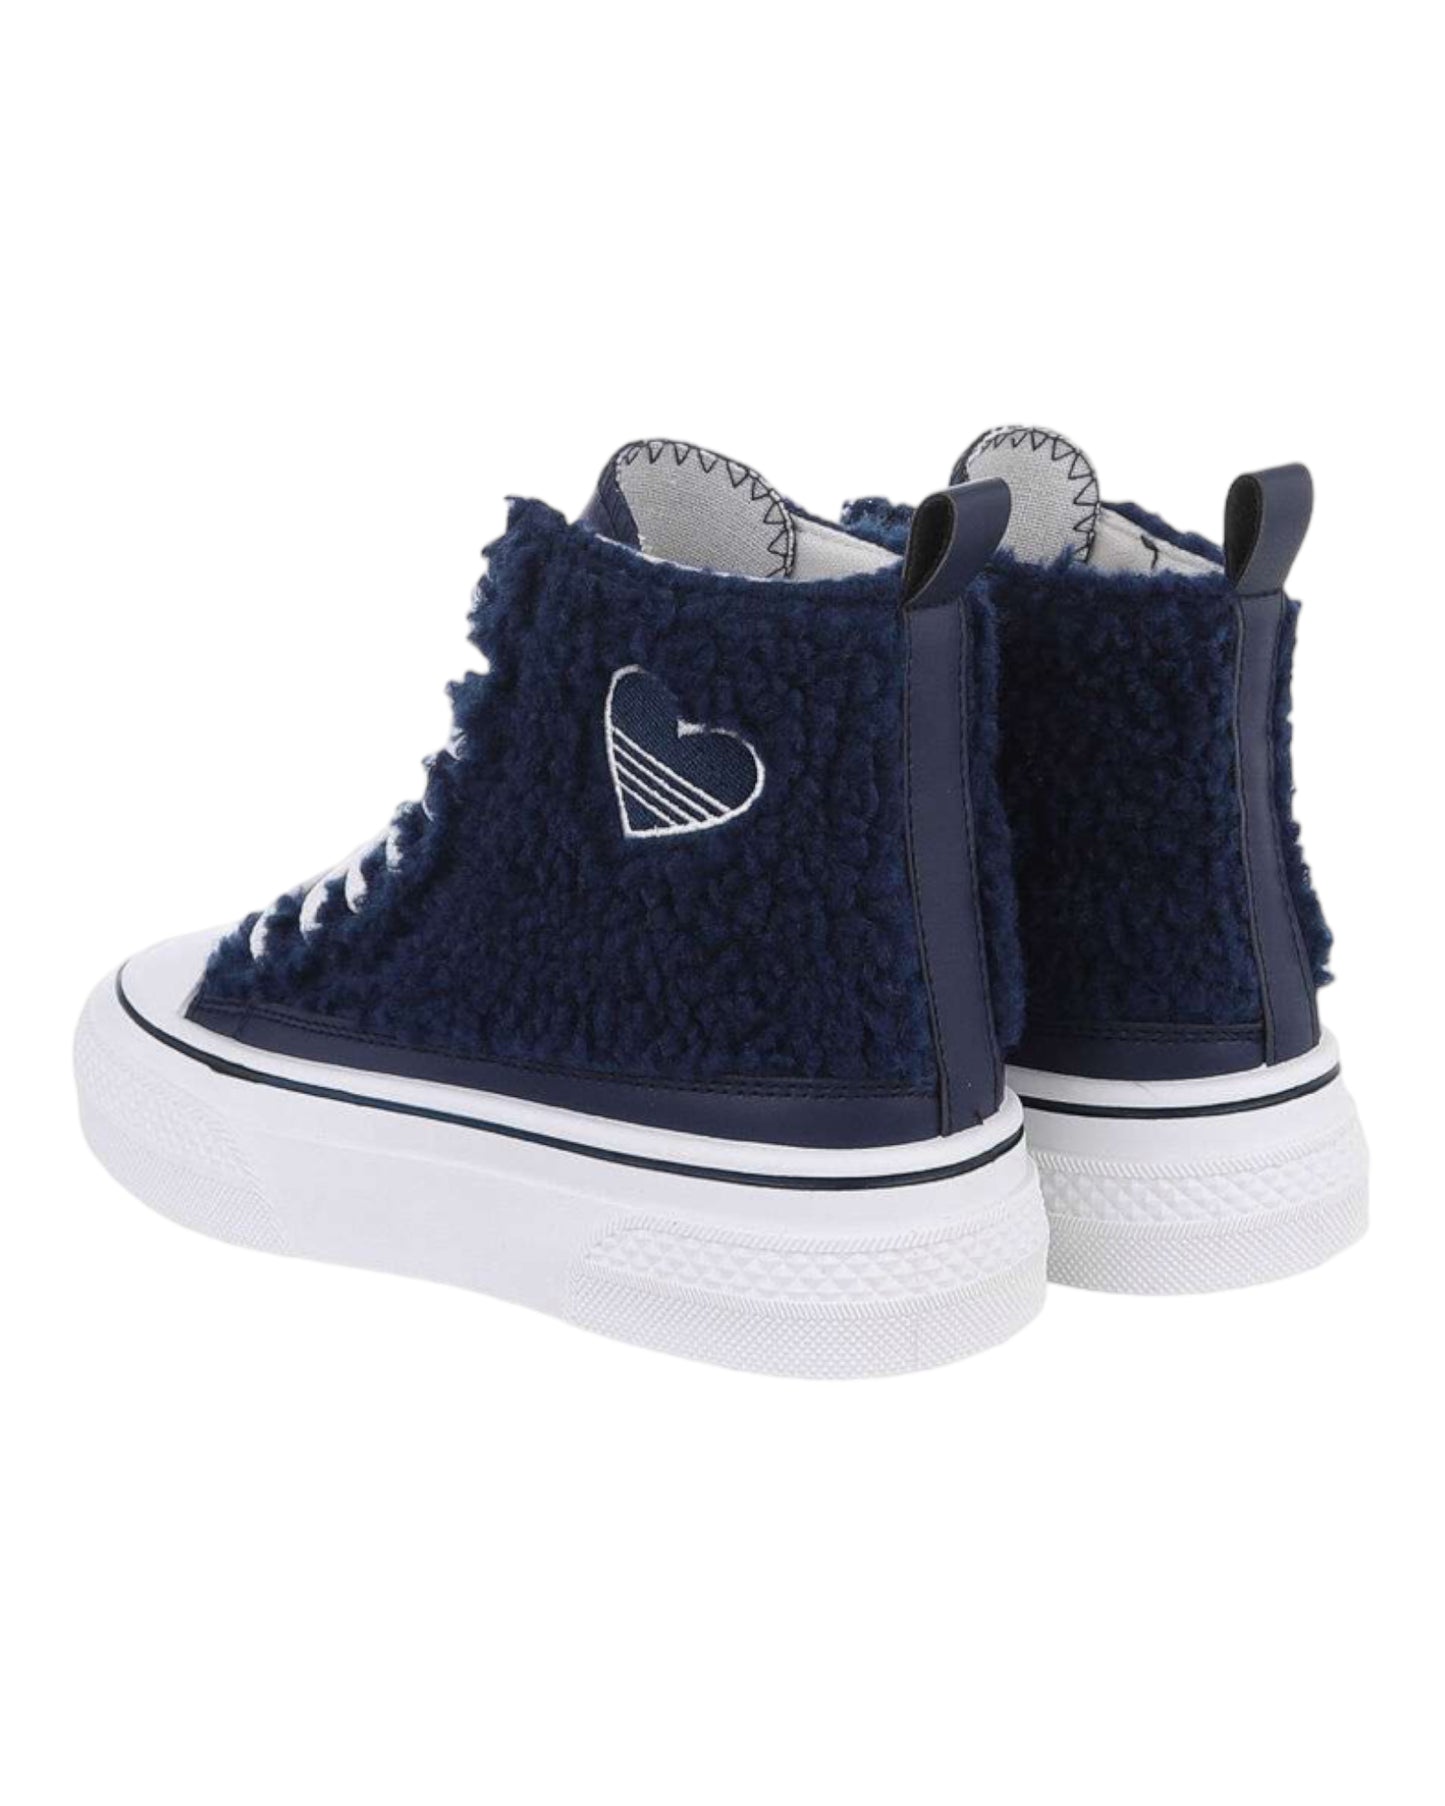 Chaussures style converse Bleu marine à semelles compensés - NuptiaLove